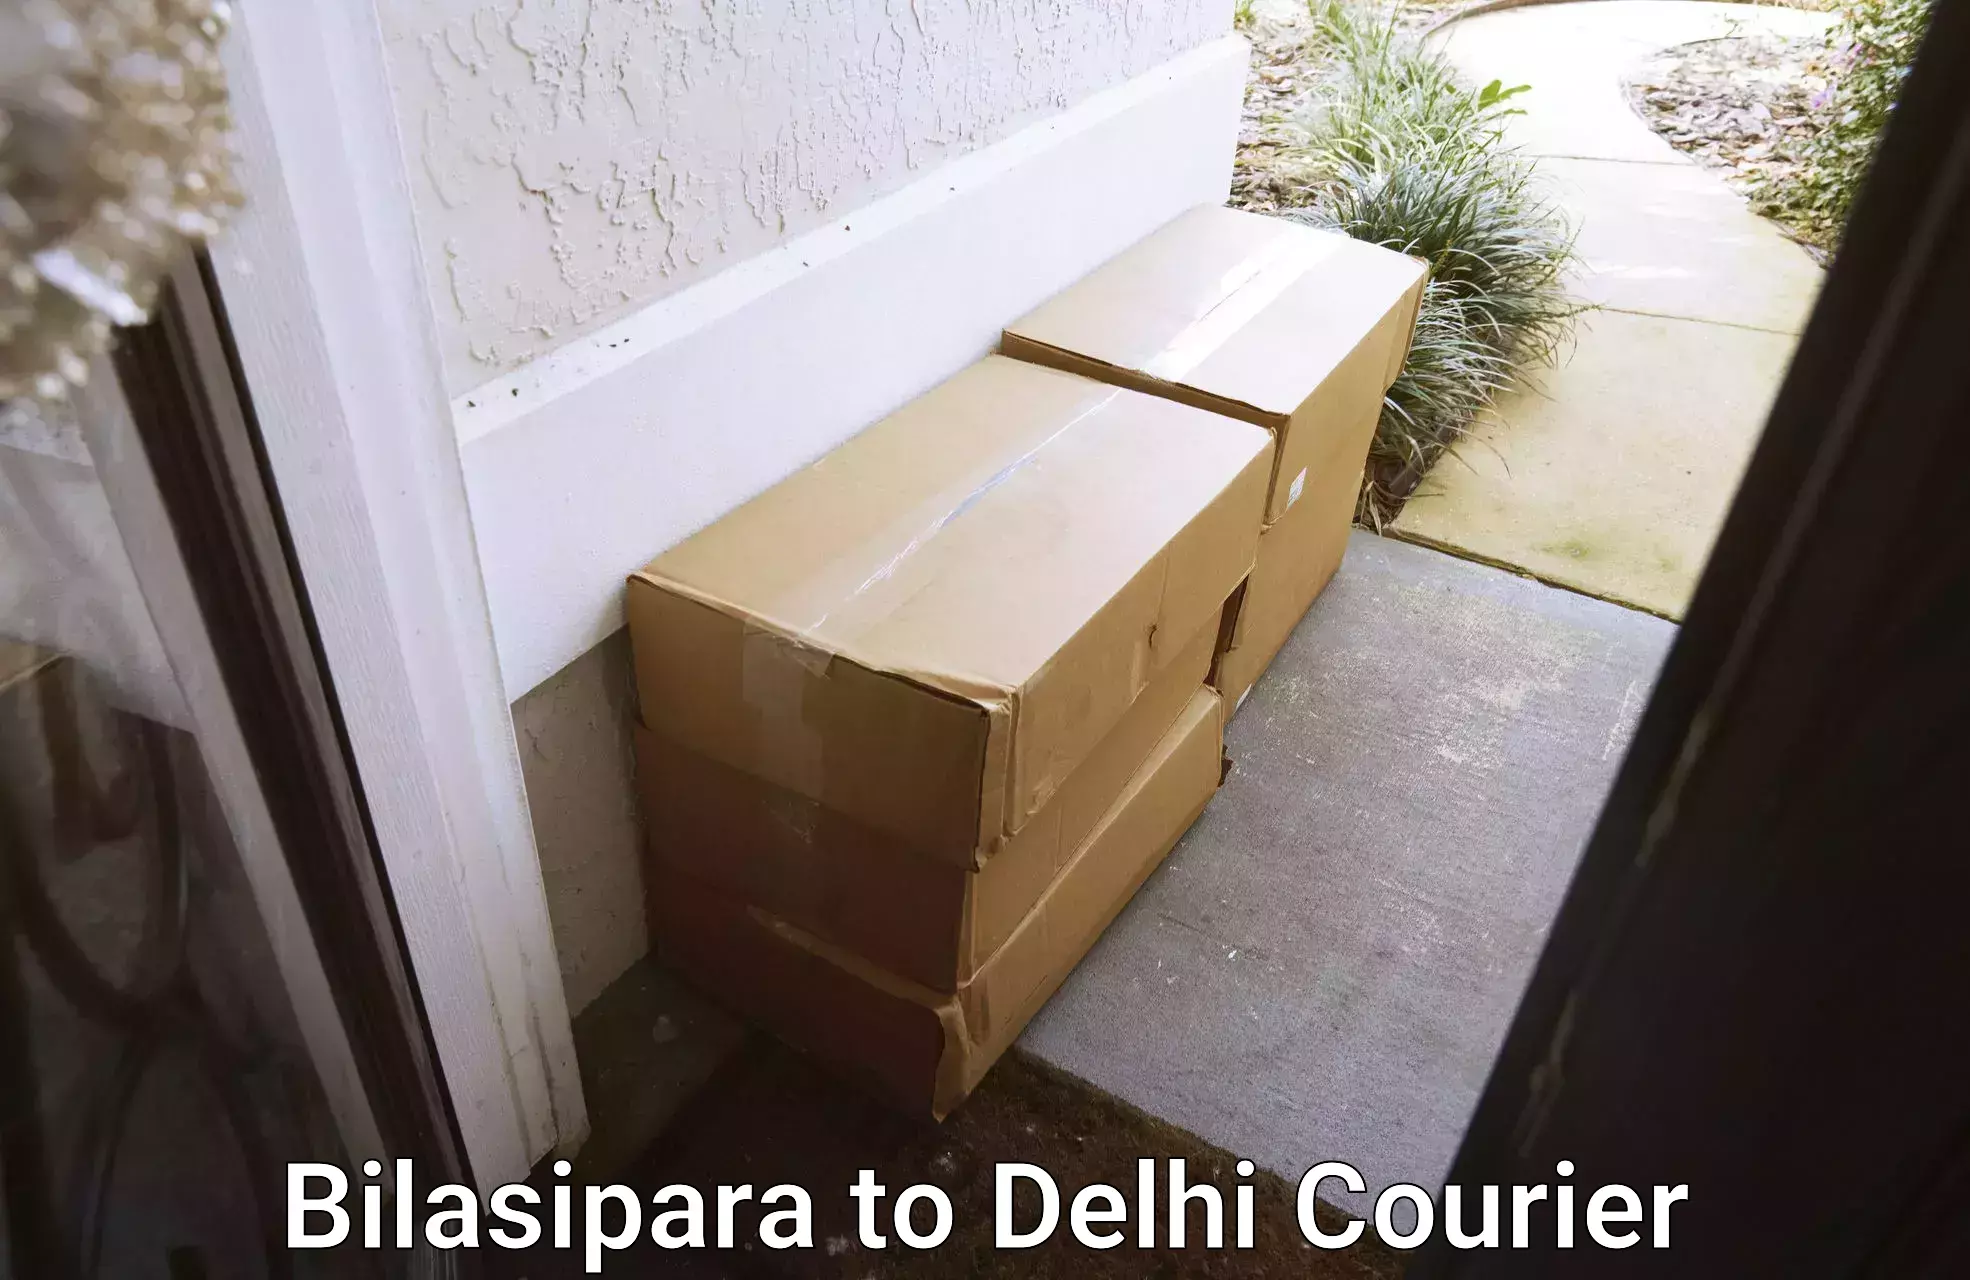 Local courier options Bilasipara to Sarojini Nagar